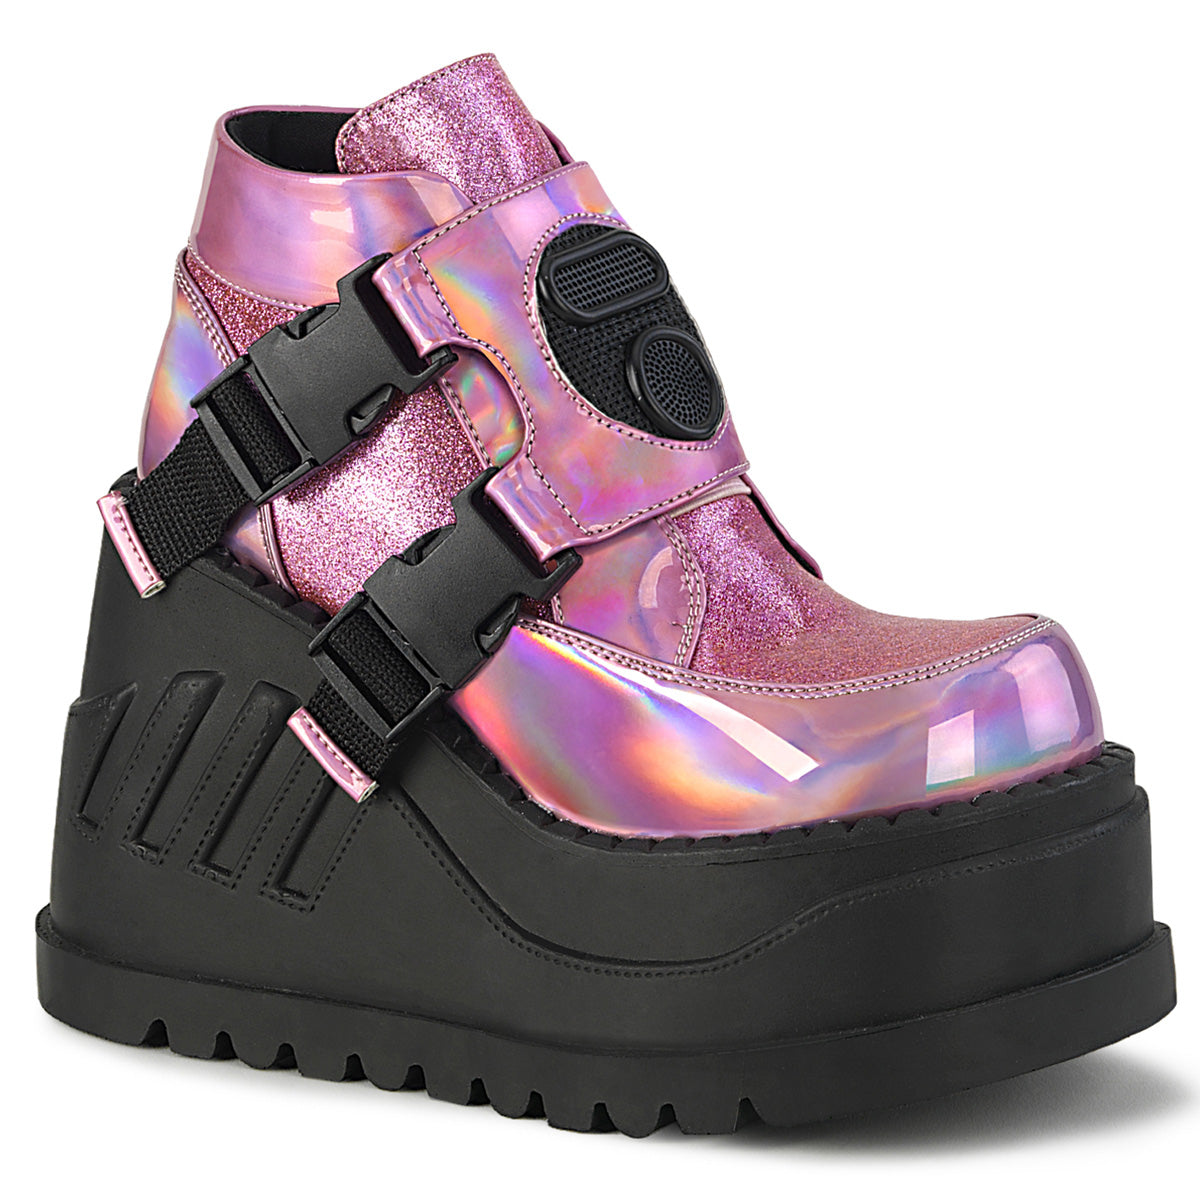 STOMP-15 Alternative Footwear Demonia Women's Ankle Boots Pink Hologram-Glitter